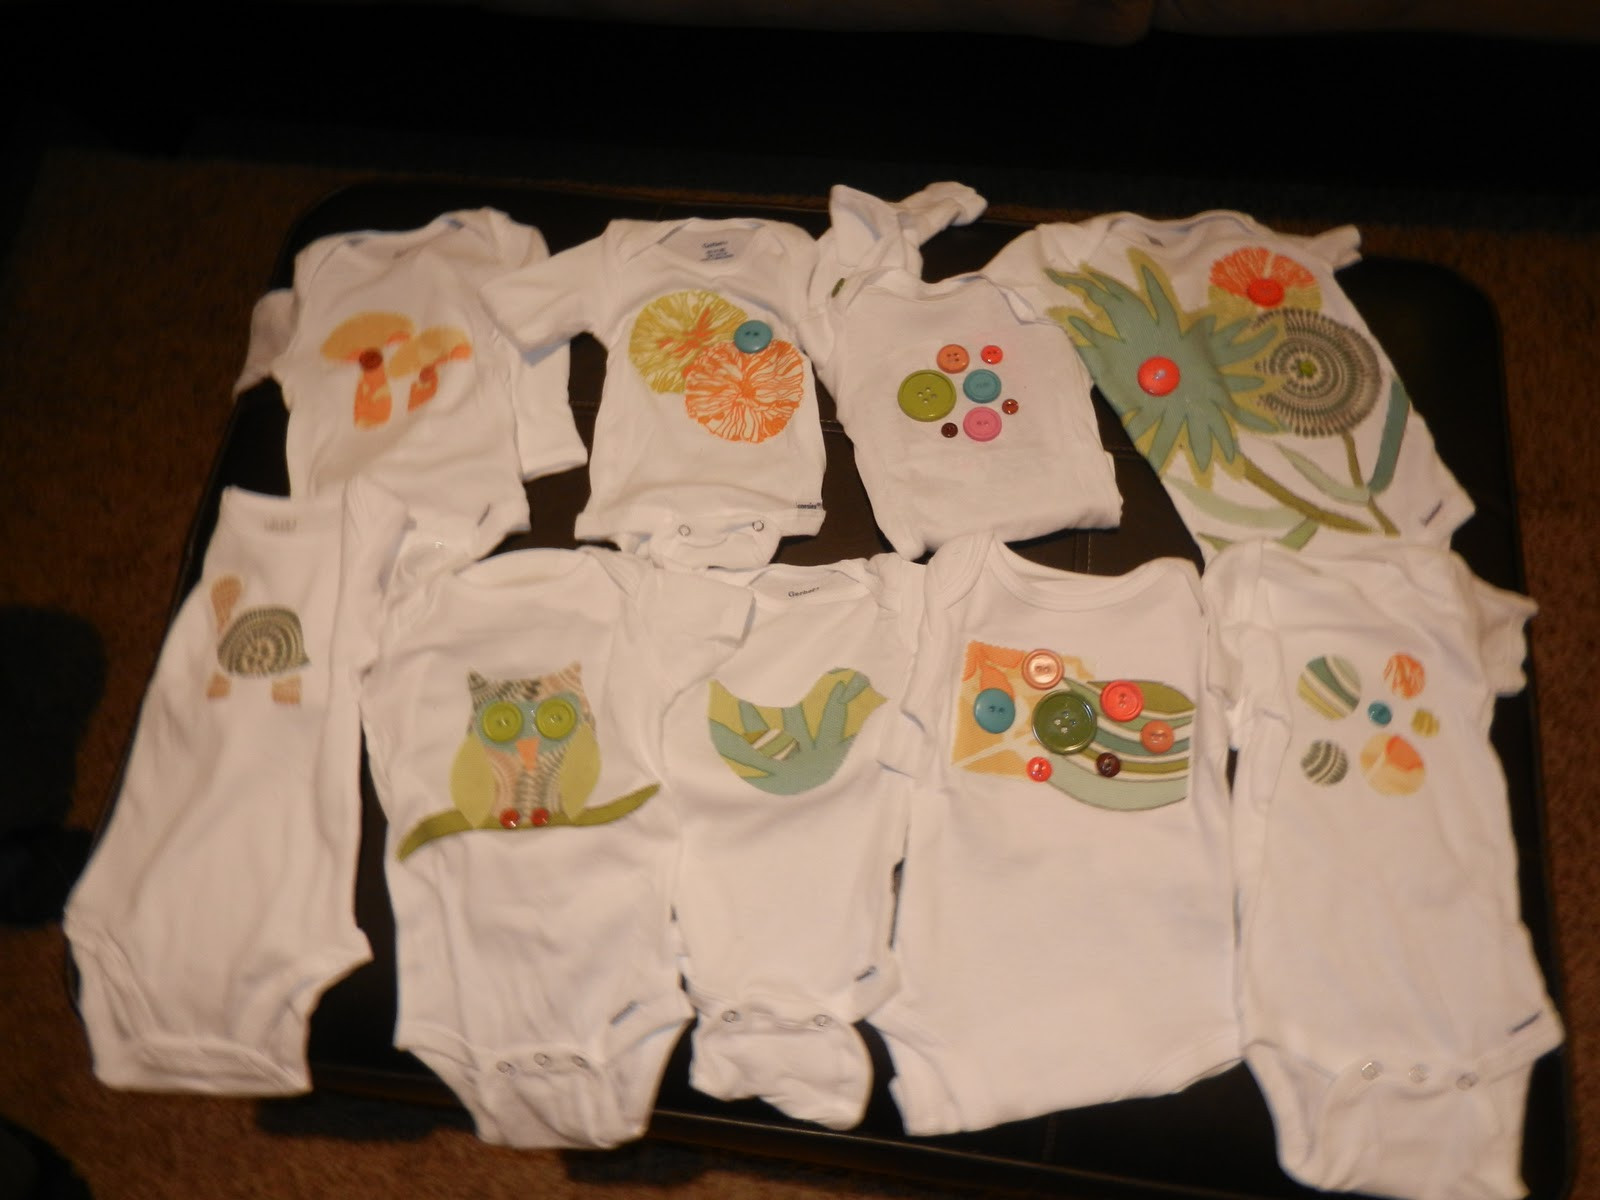 Baby Shower Onesie Decorating Ideas
 I Heart Pears Decorating onesies during baby shower